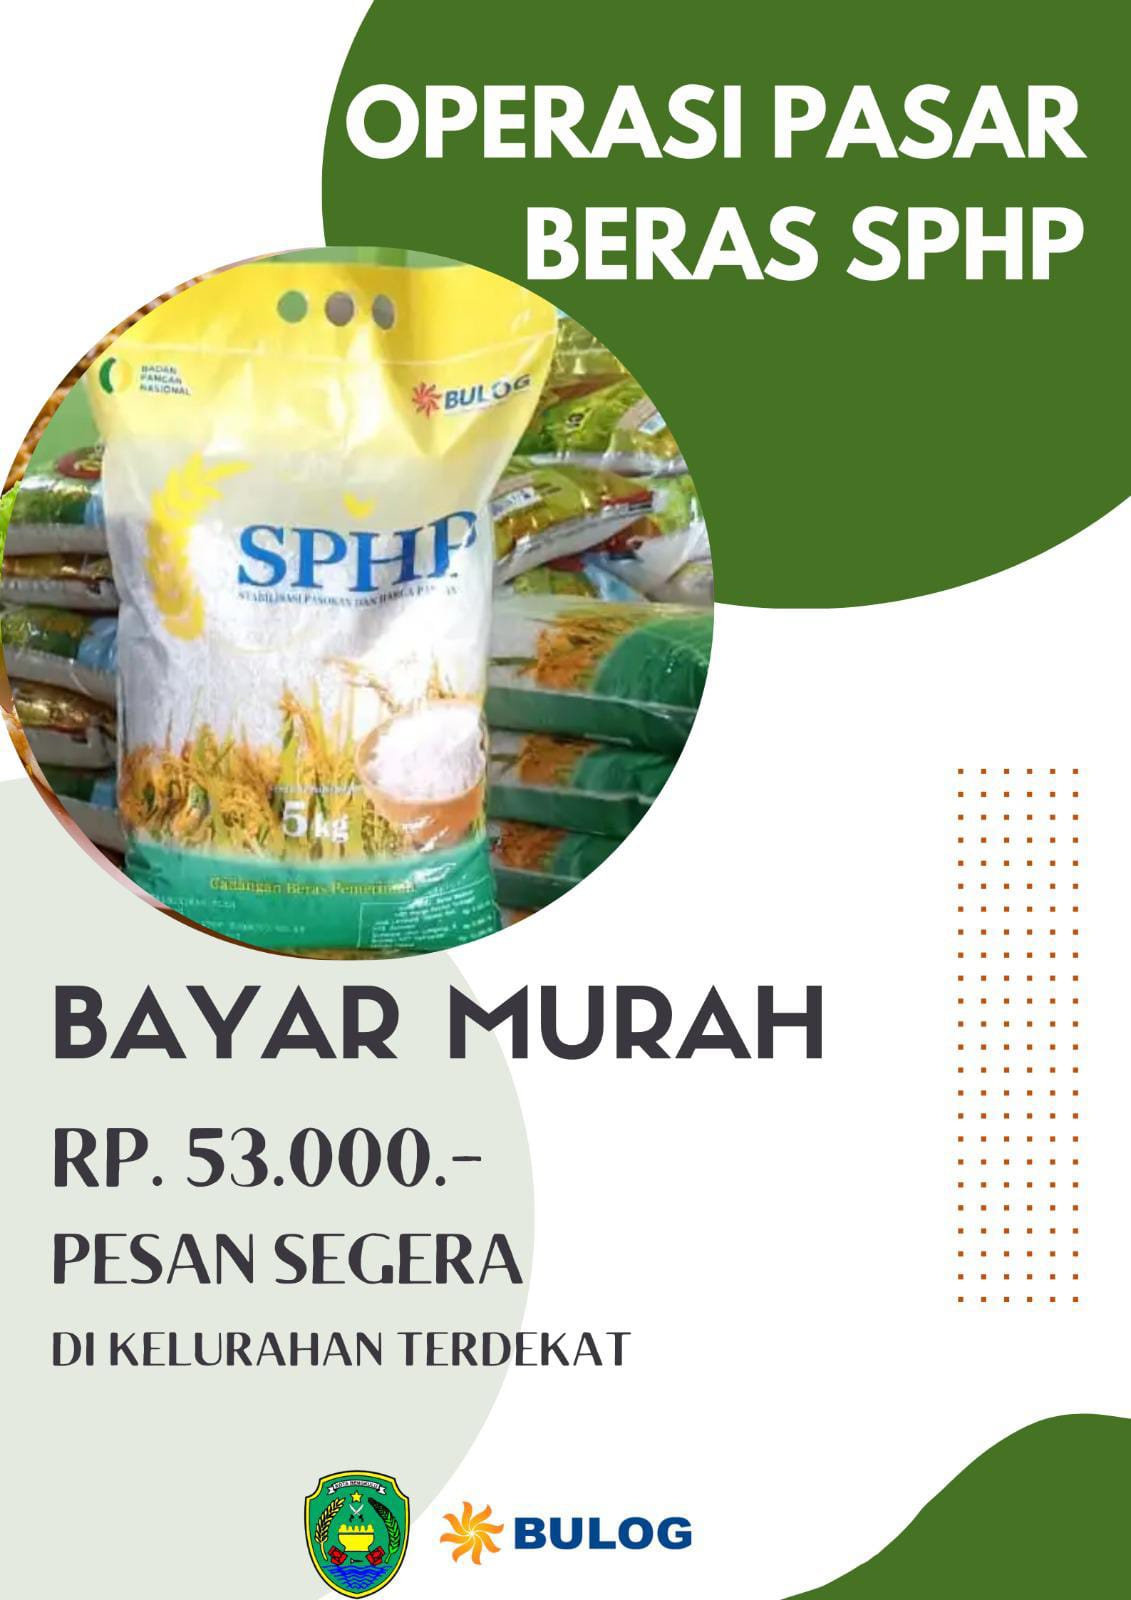 Begini Cara Pembelian Beras Murah SPHP di Kota Bengkulu, Harganya Rp 53/Perkg